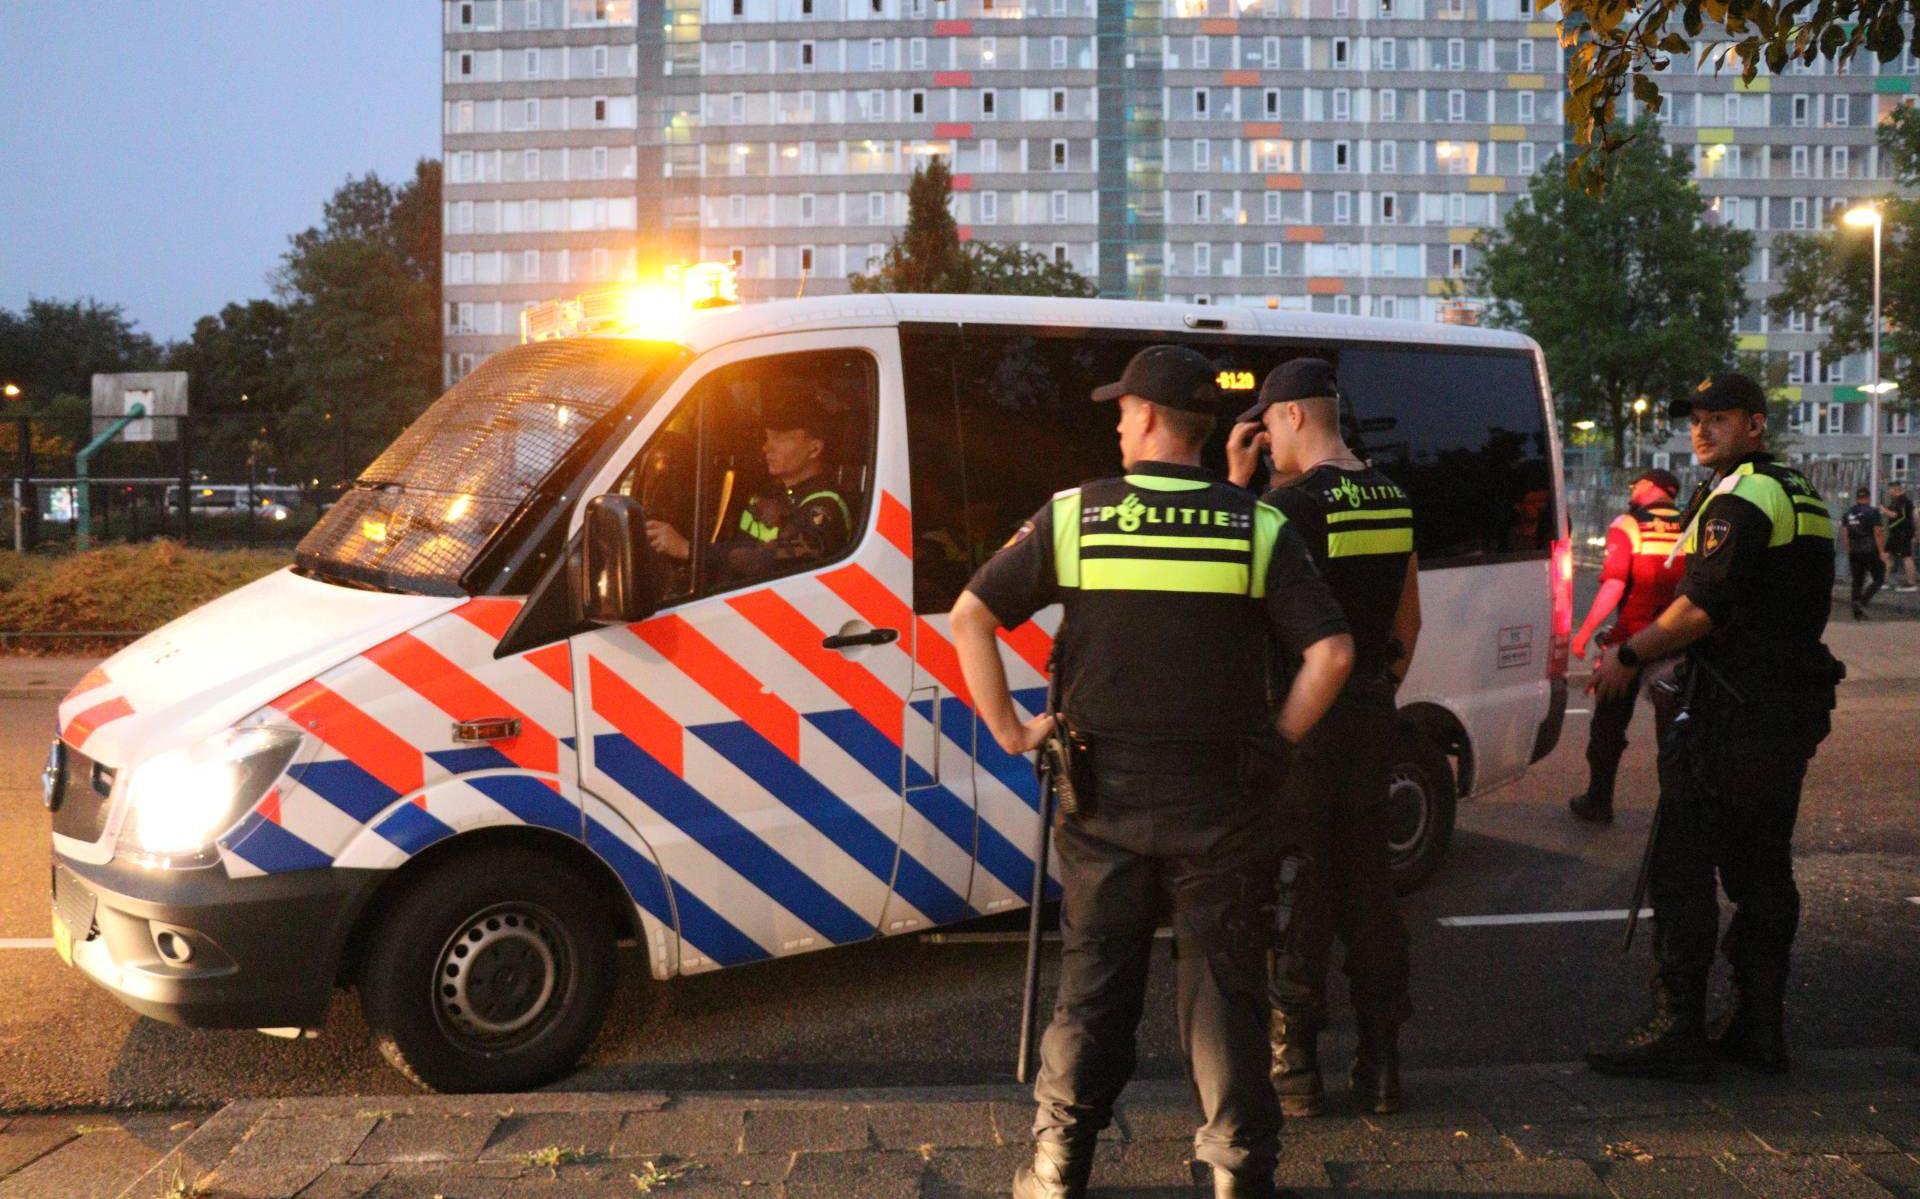 Relschopper Kanaleneiland opgepakt na vrijgeven beelden